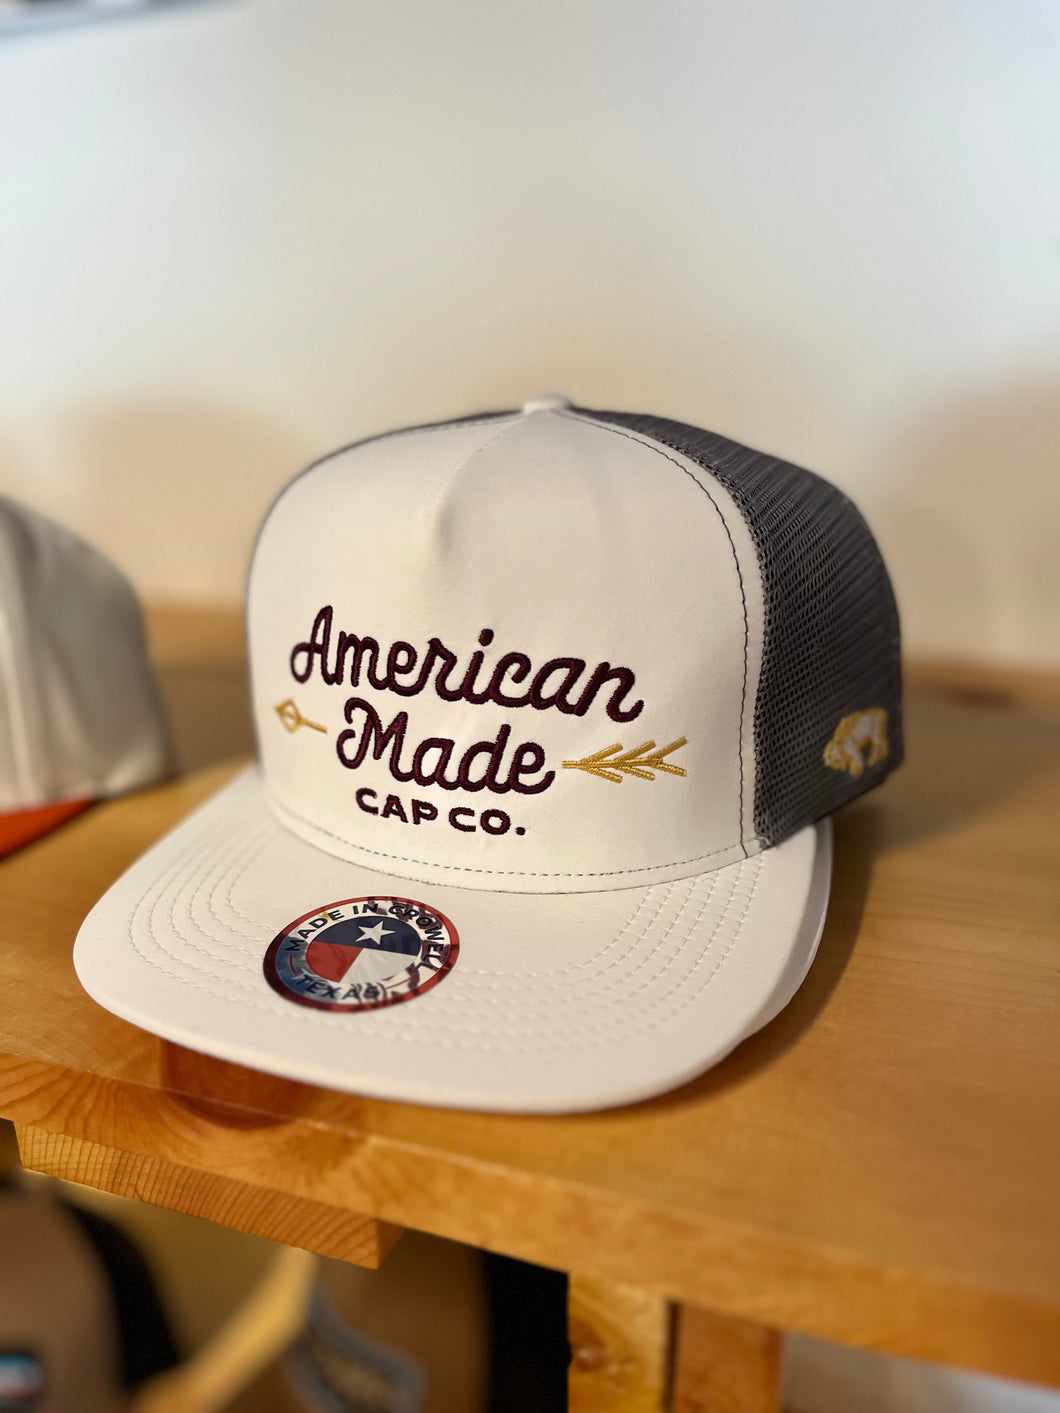 American Made Cap